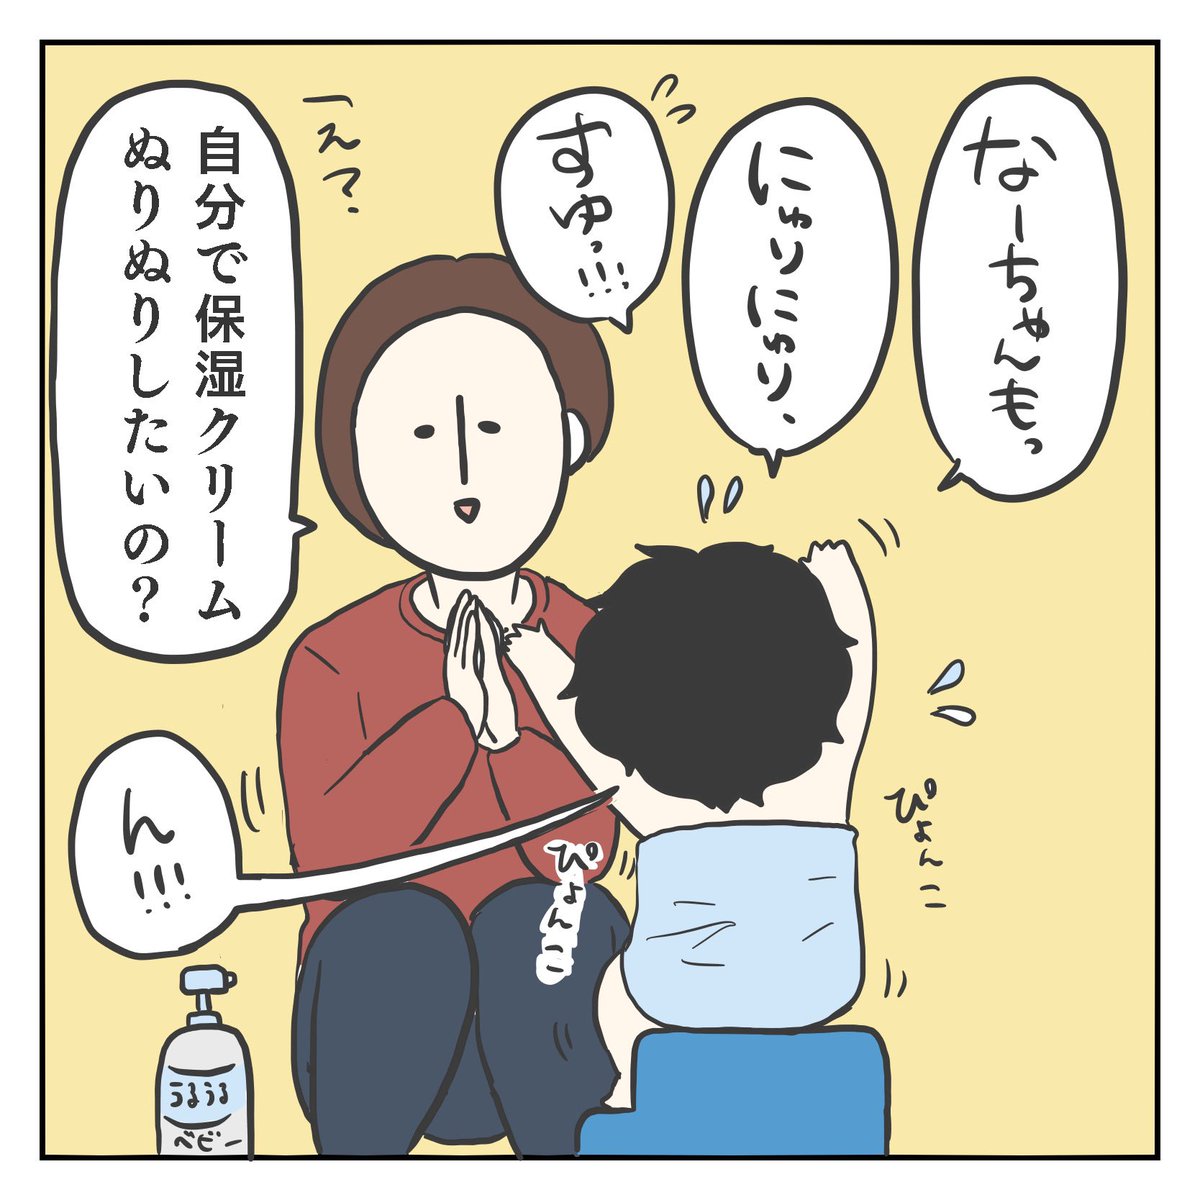 ぬりぬりすゆ!(1/3)

#育児漫画 